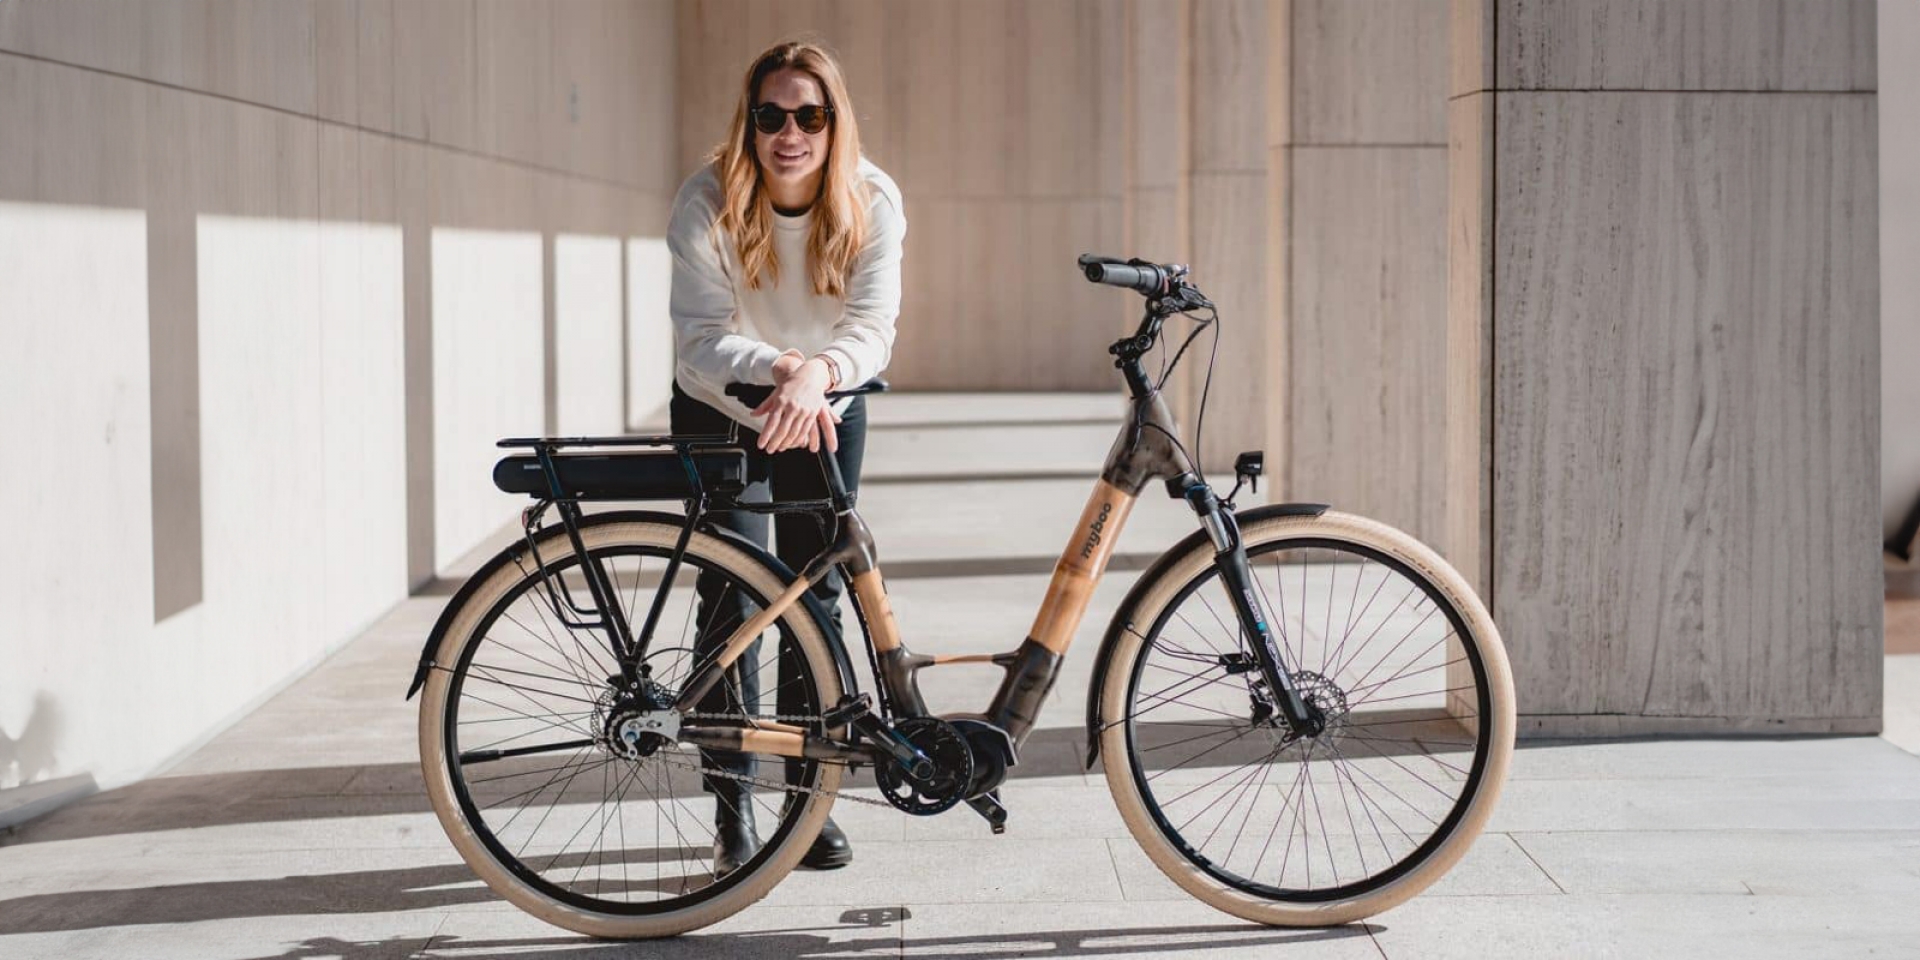 MyBoo 推出全新城市電動自行車 Bia E5000 和 EP6，竹製車架兼具環保與時尚